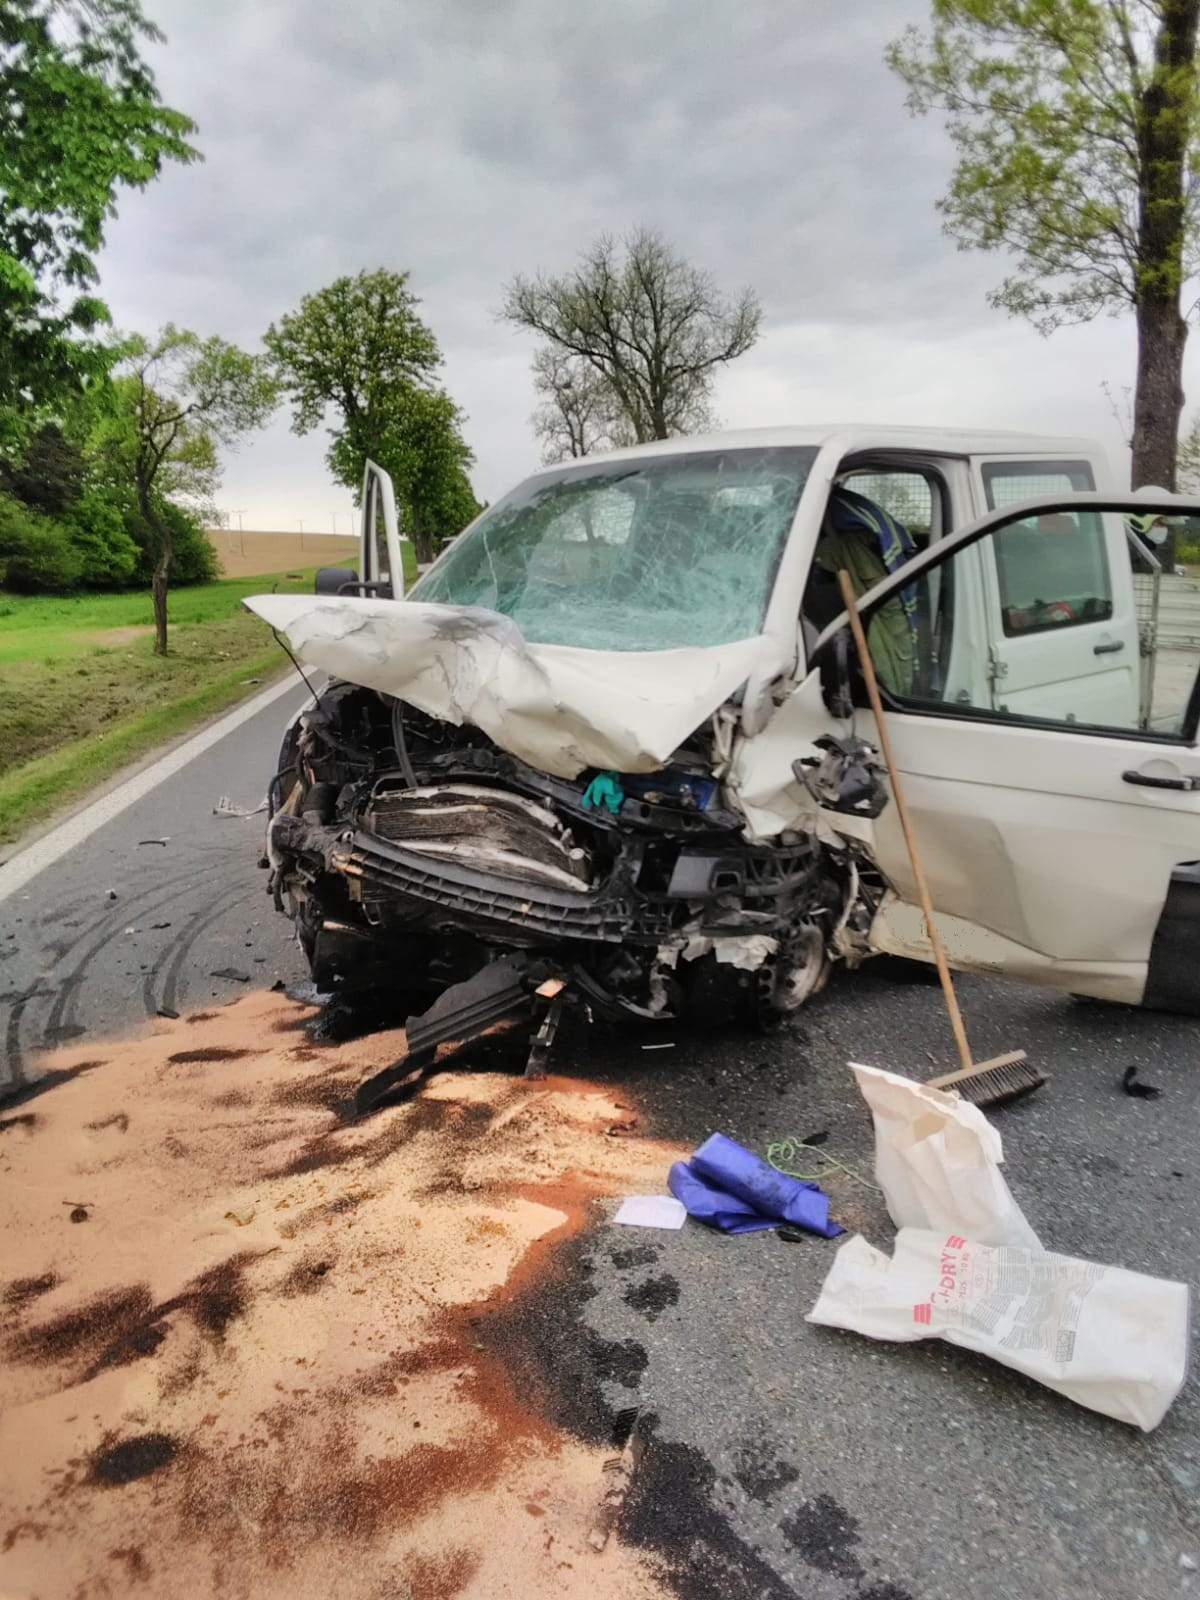 Dopravní nehoda 2 OA a dodávka, Jindřichův Hradec - 26. 5. 2021 (2).jpg